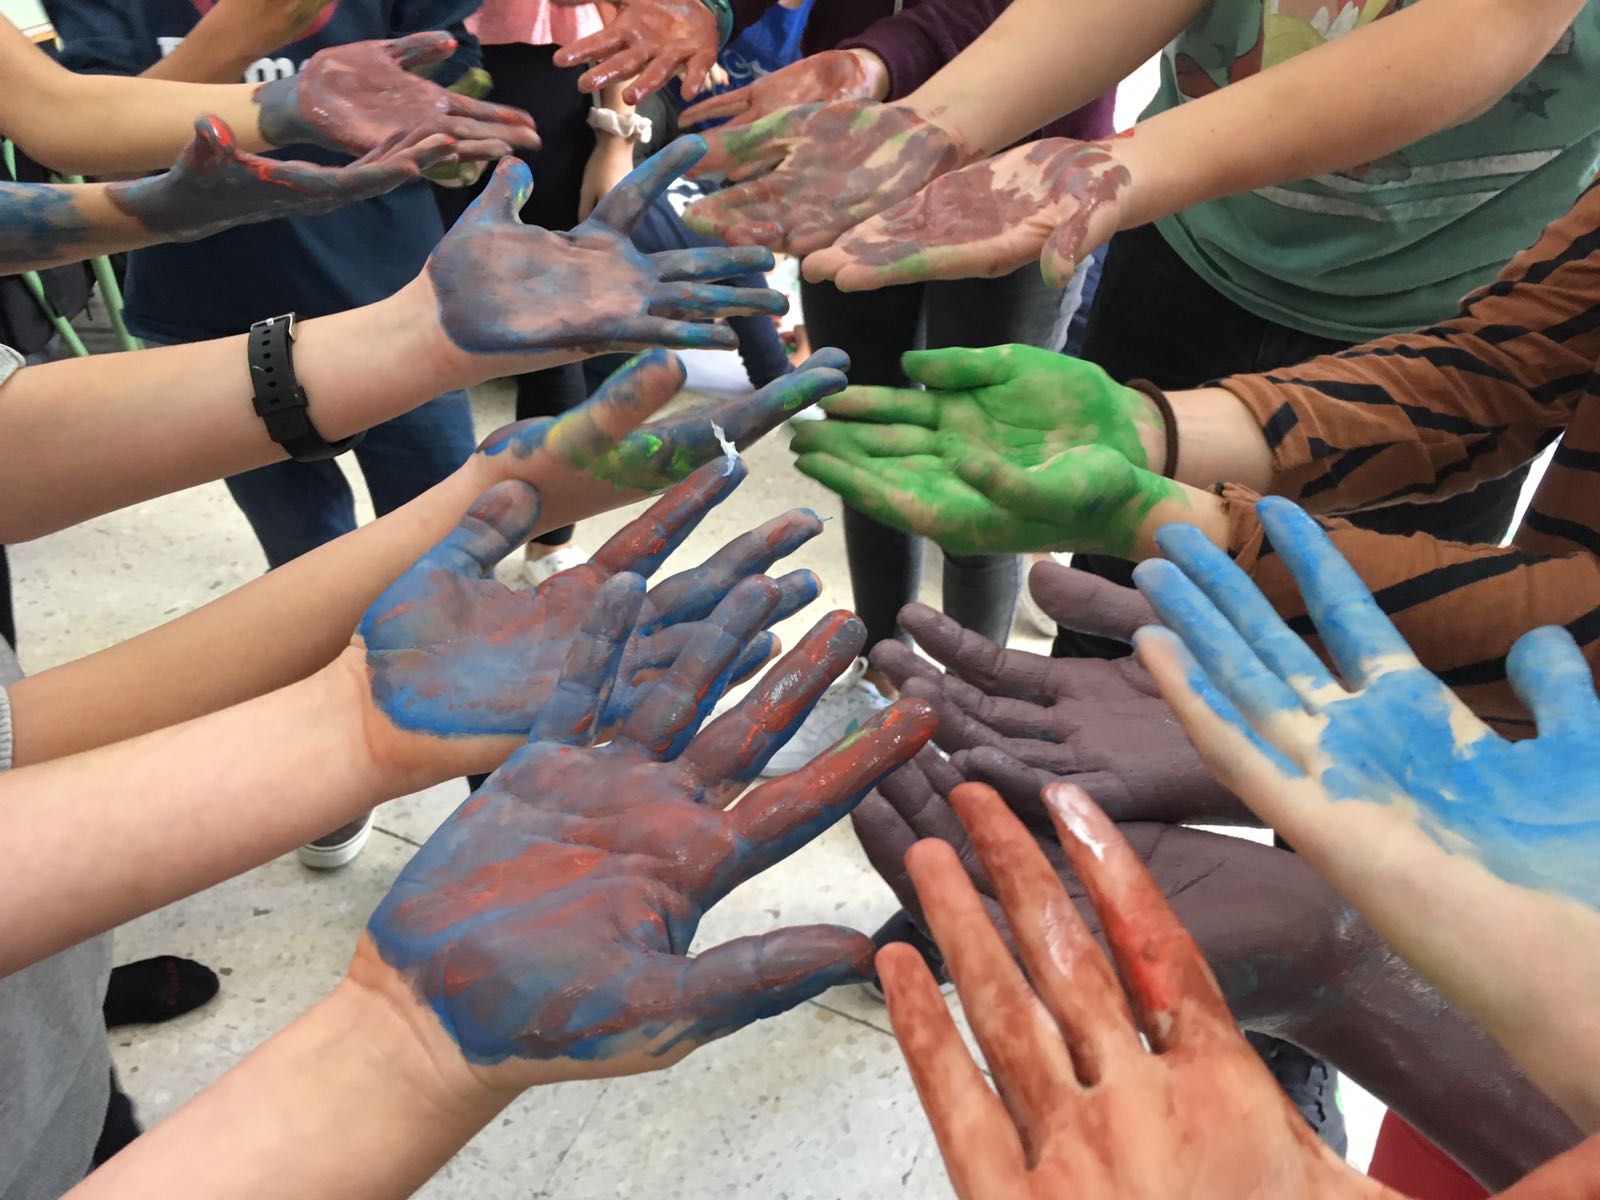 Las palmas de las manos de diferentes personas pintadas de distintos colores